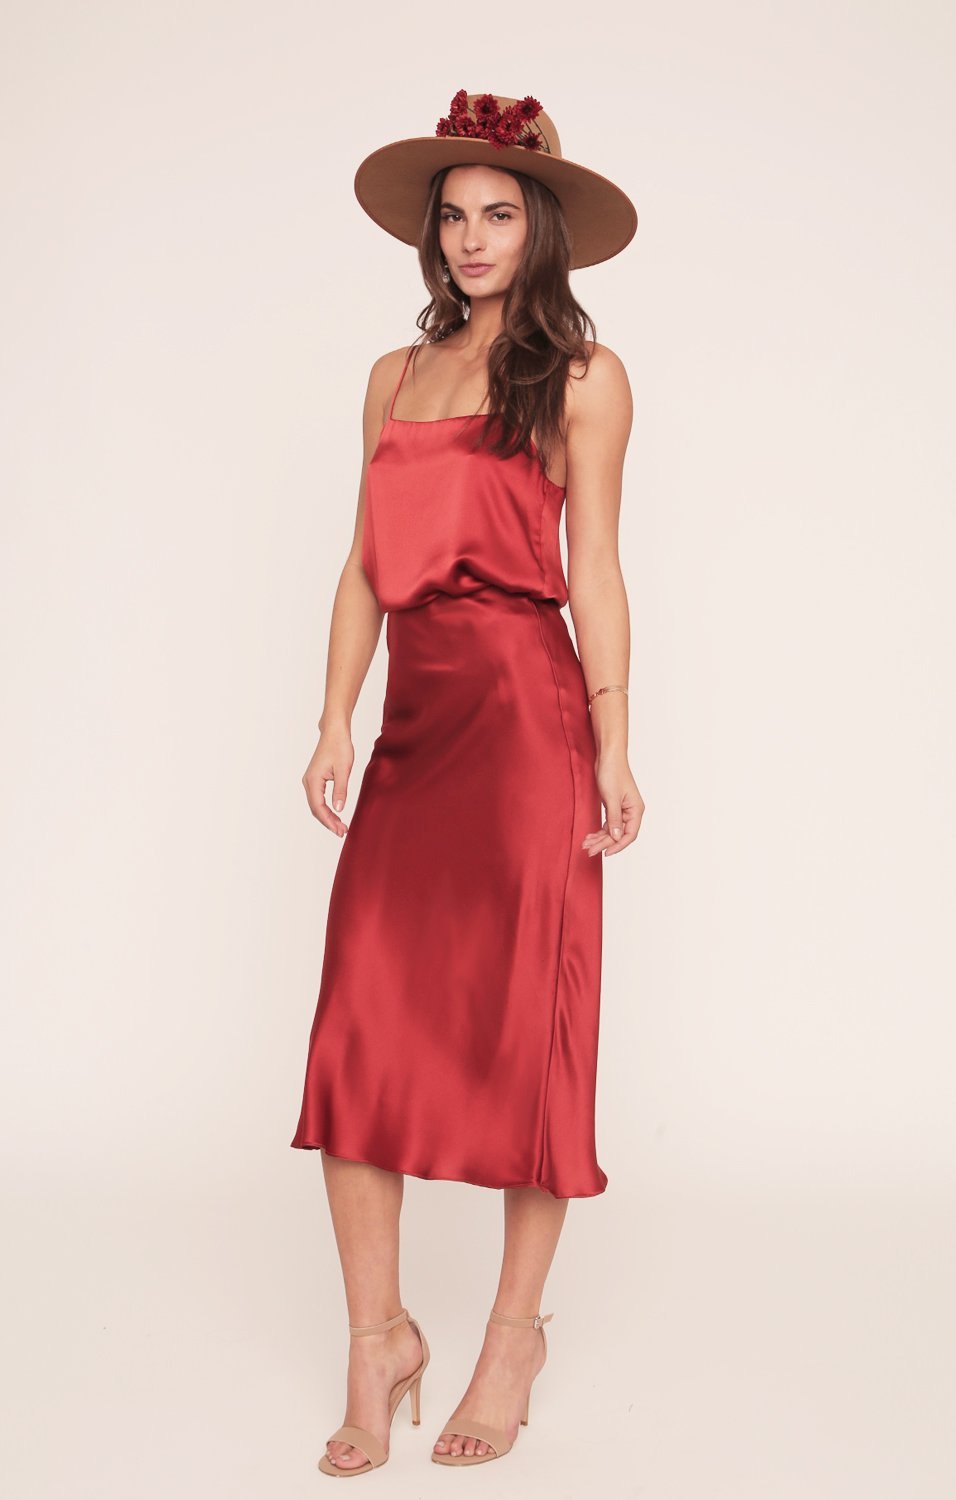 Kendall Slip | Tango Red Silk Skirt - MERRITT CHARLES